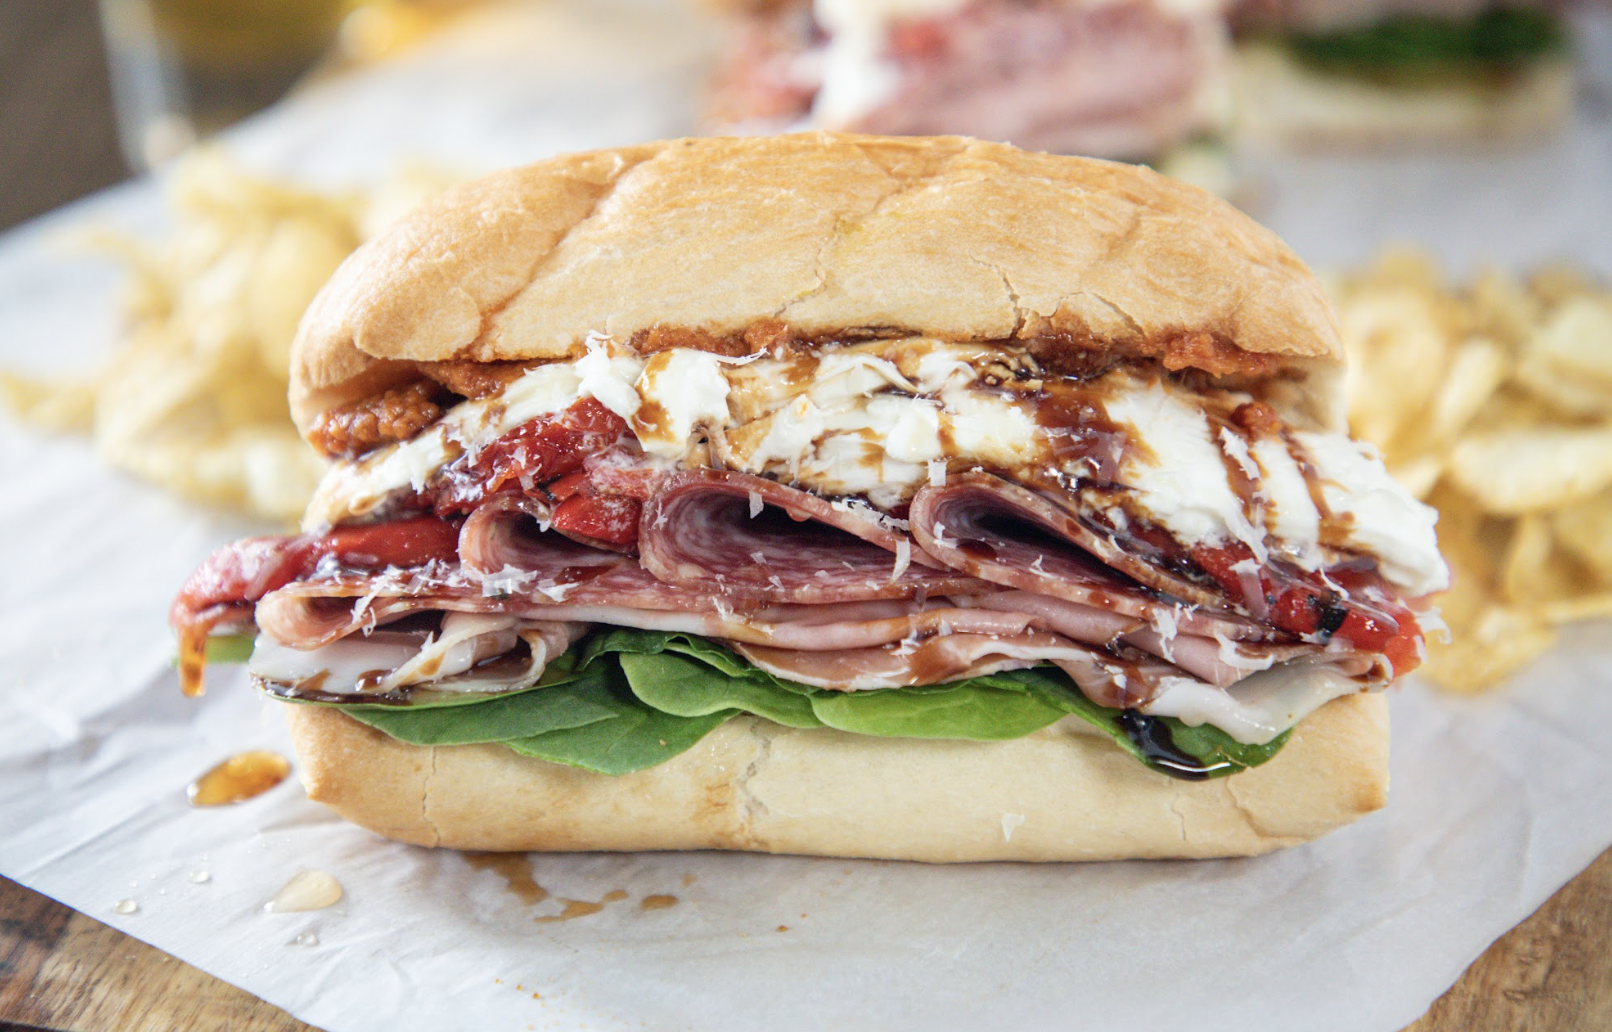 loaded italian sandwich